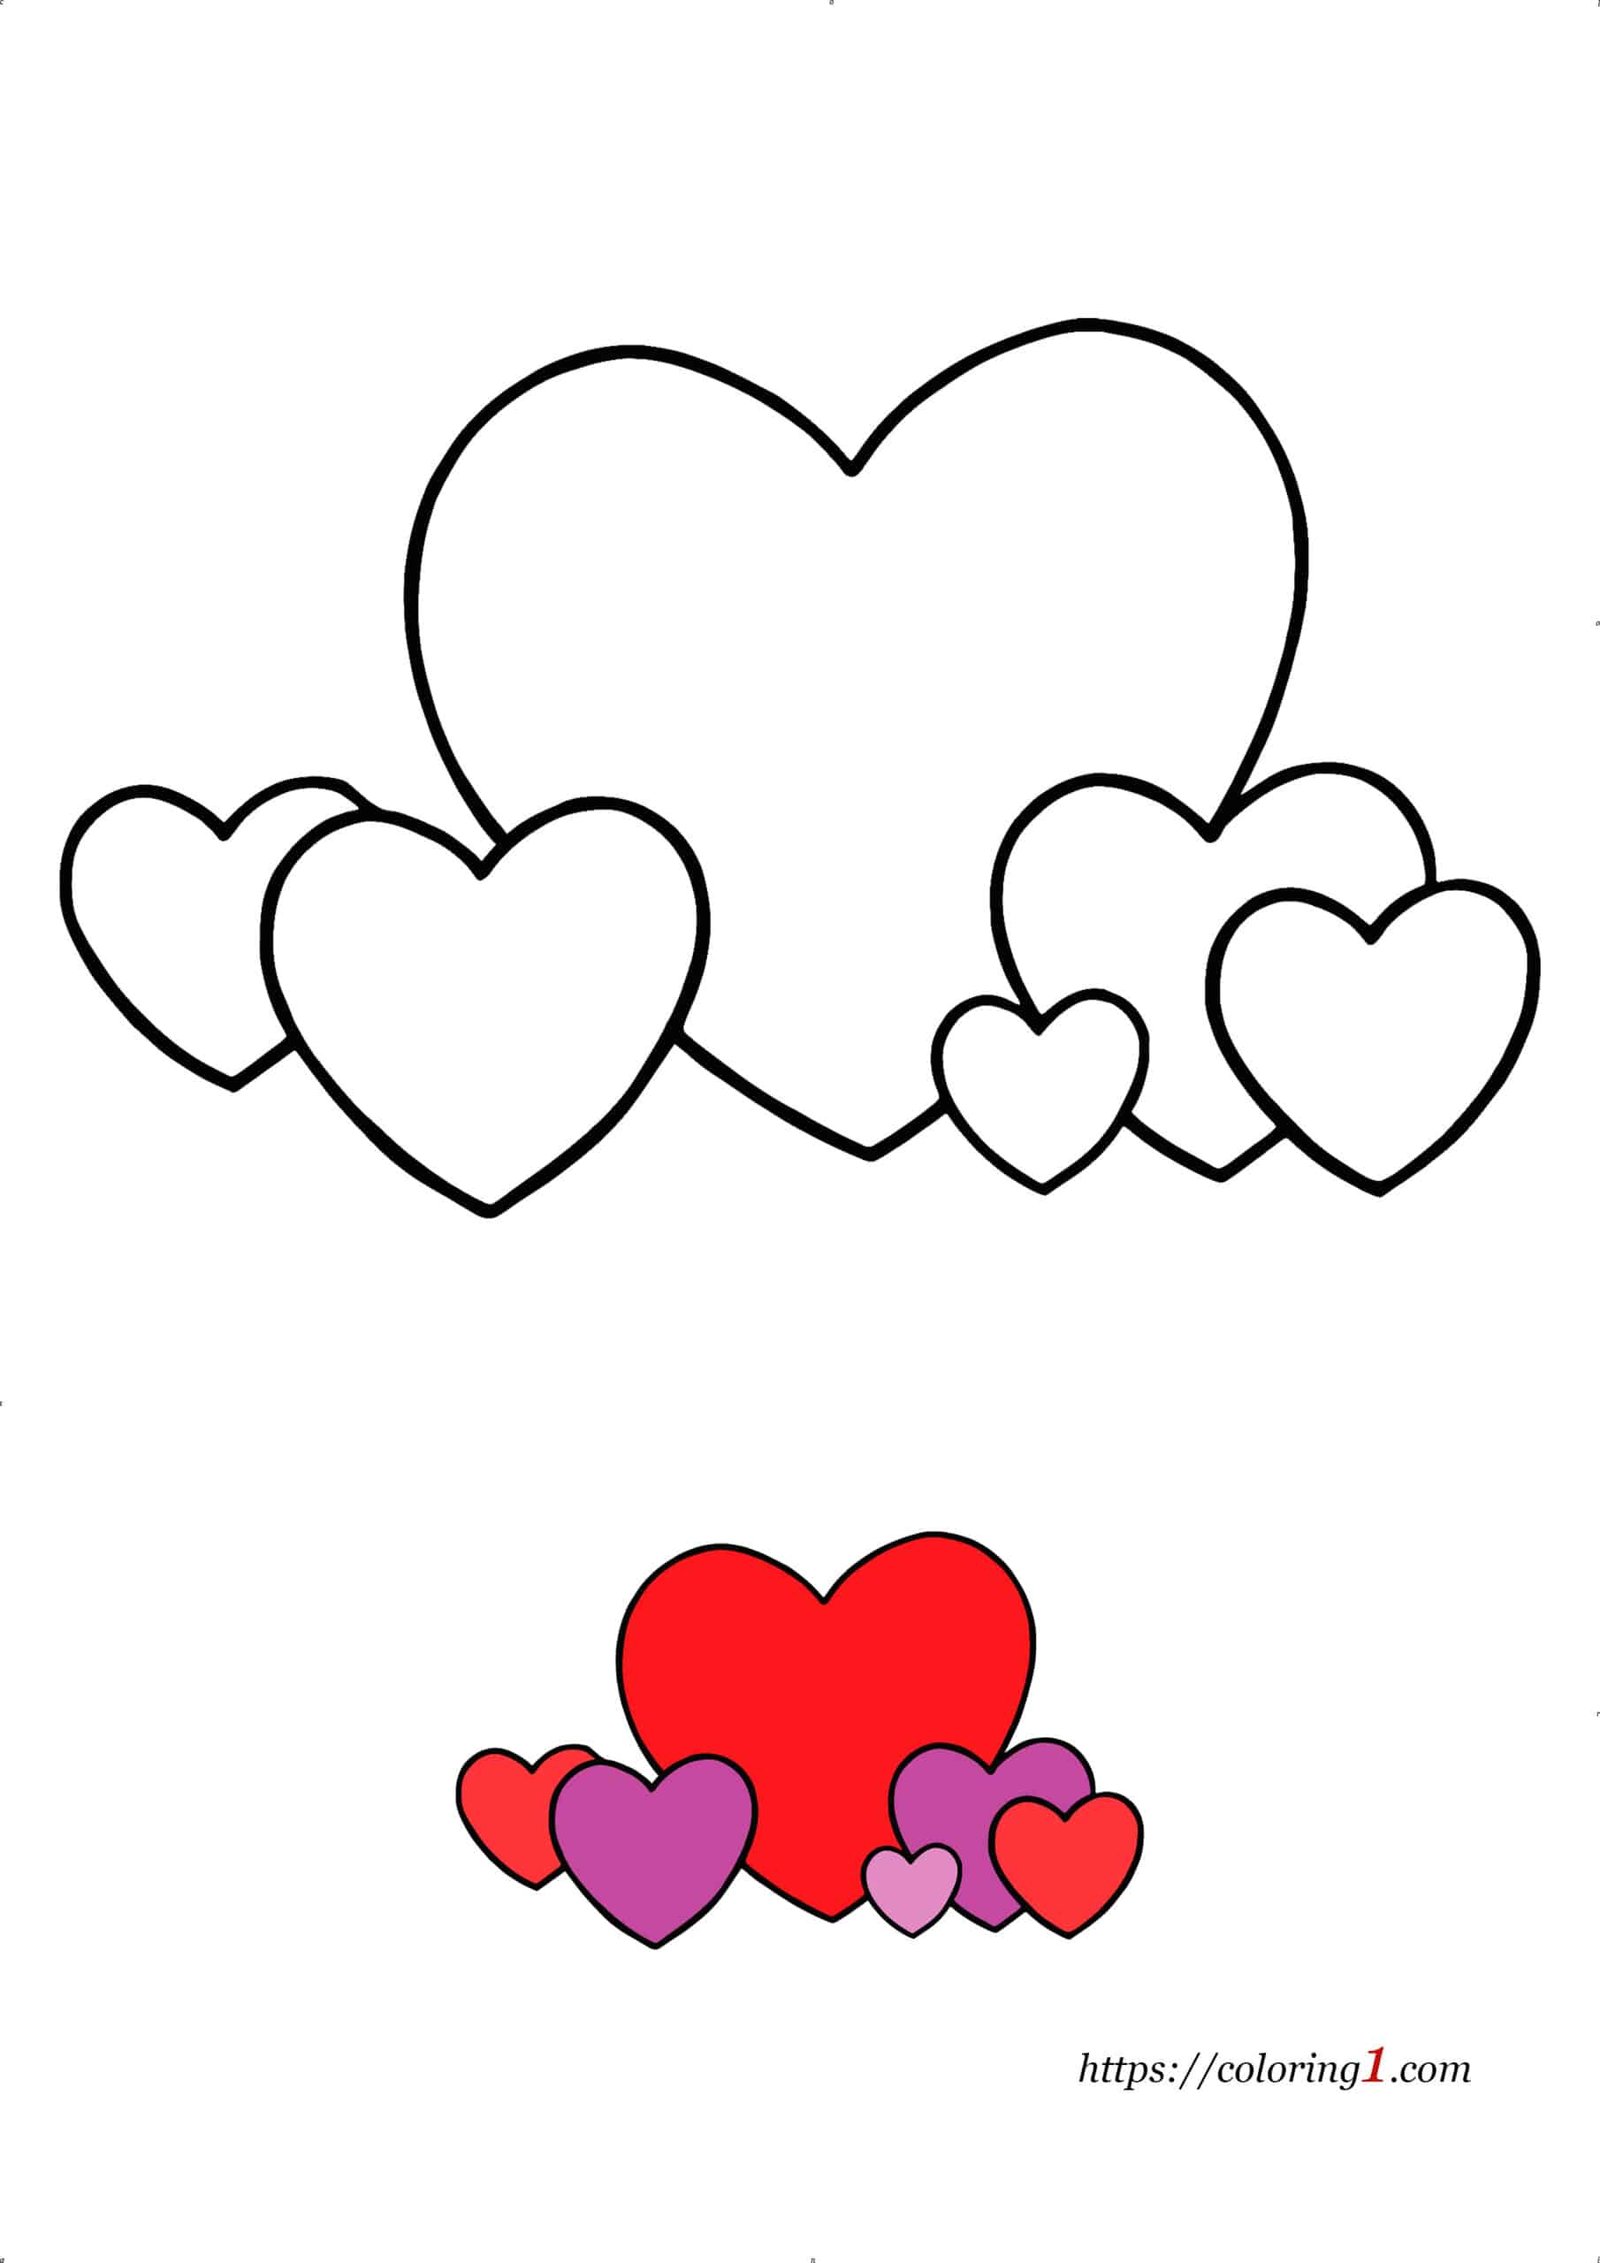 Groot hart met kleine hartjes kleurplaat om af te drukken voor kinderen